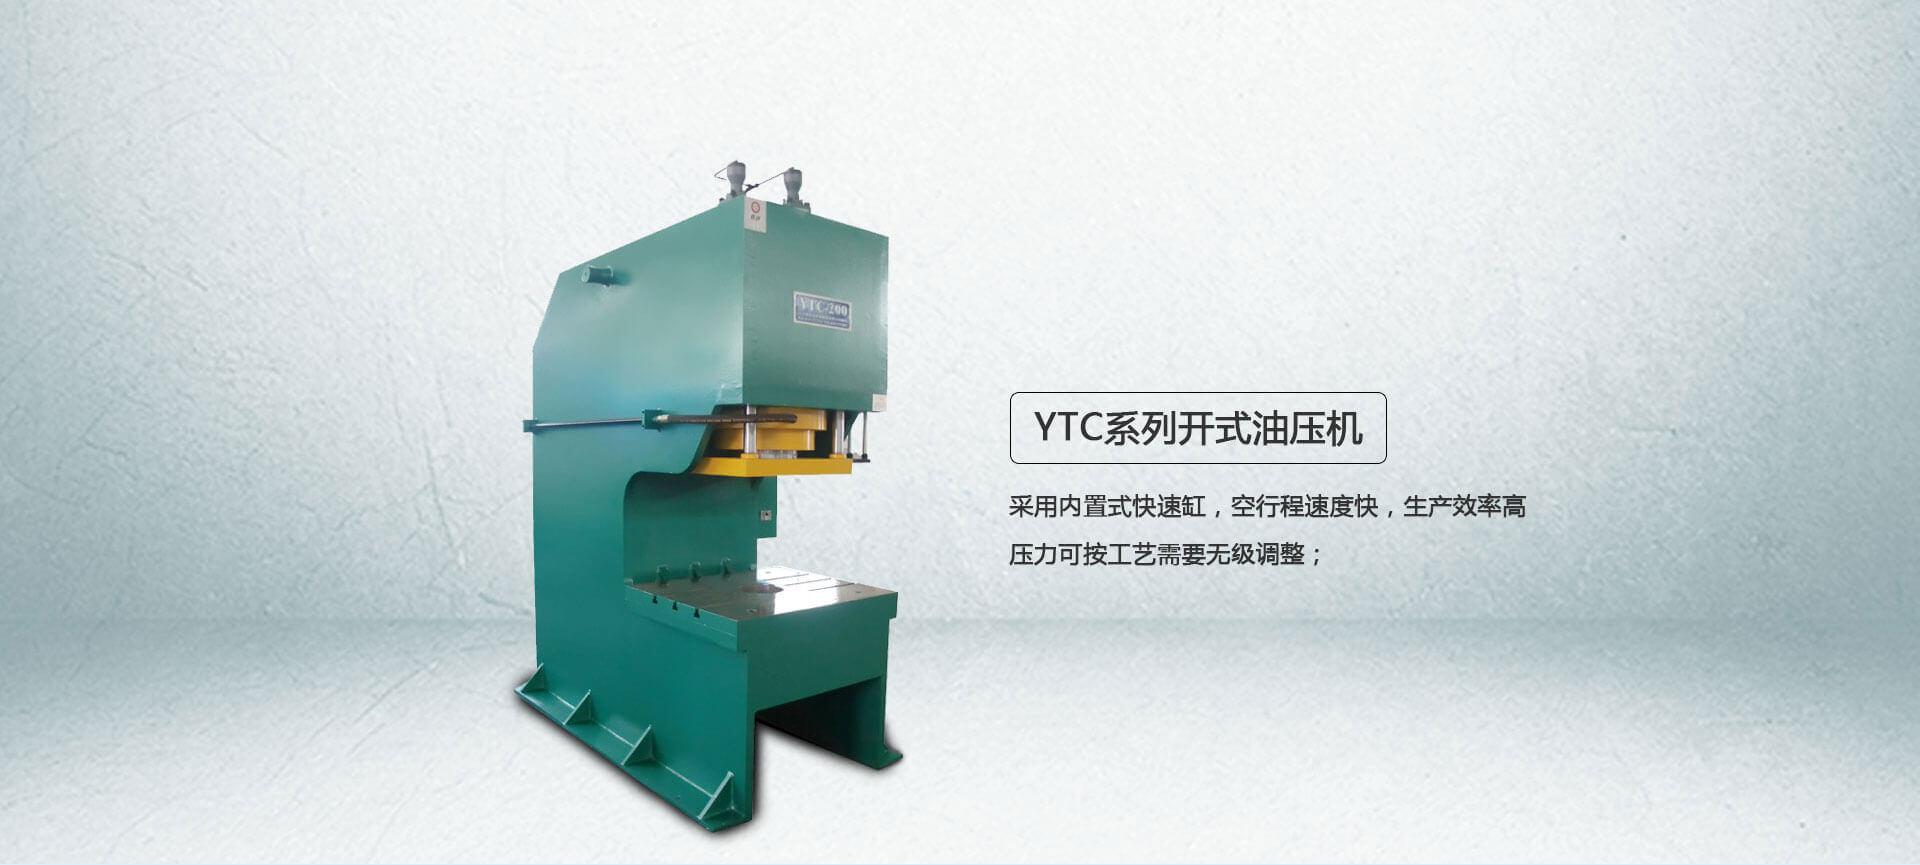 YTC系列單臂液壓機